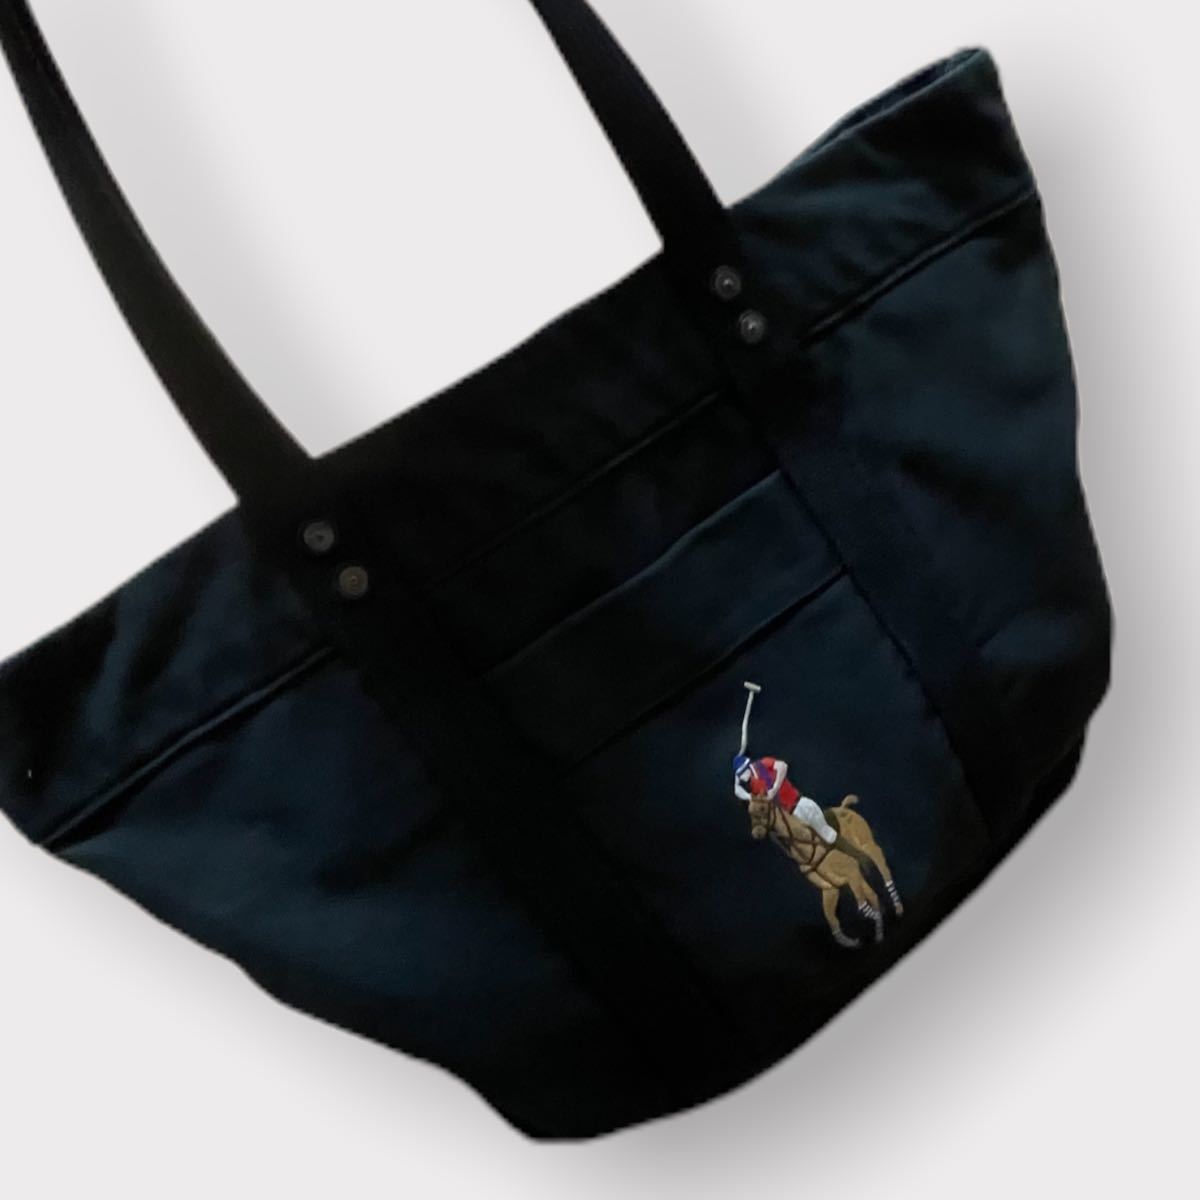 ポロ ラルフローレン メンズ Polo Ralph Lauren Canva Big Pony Tote Bag トートバッグ